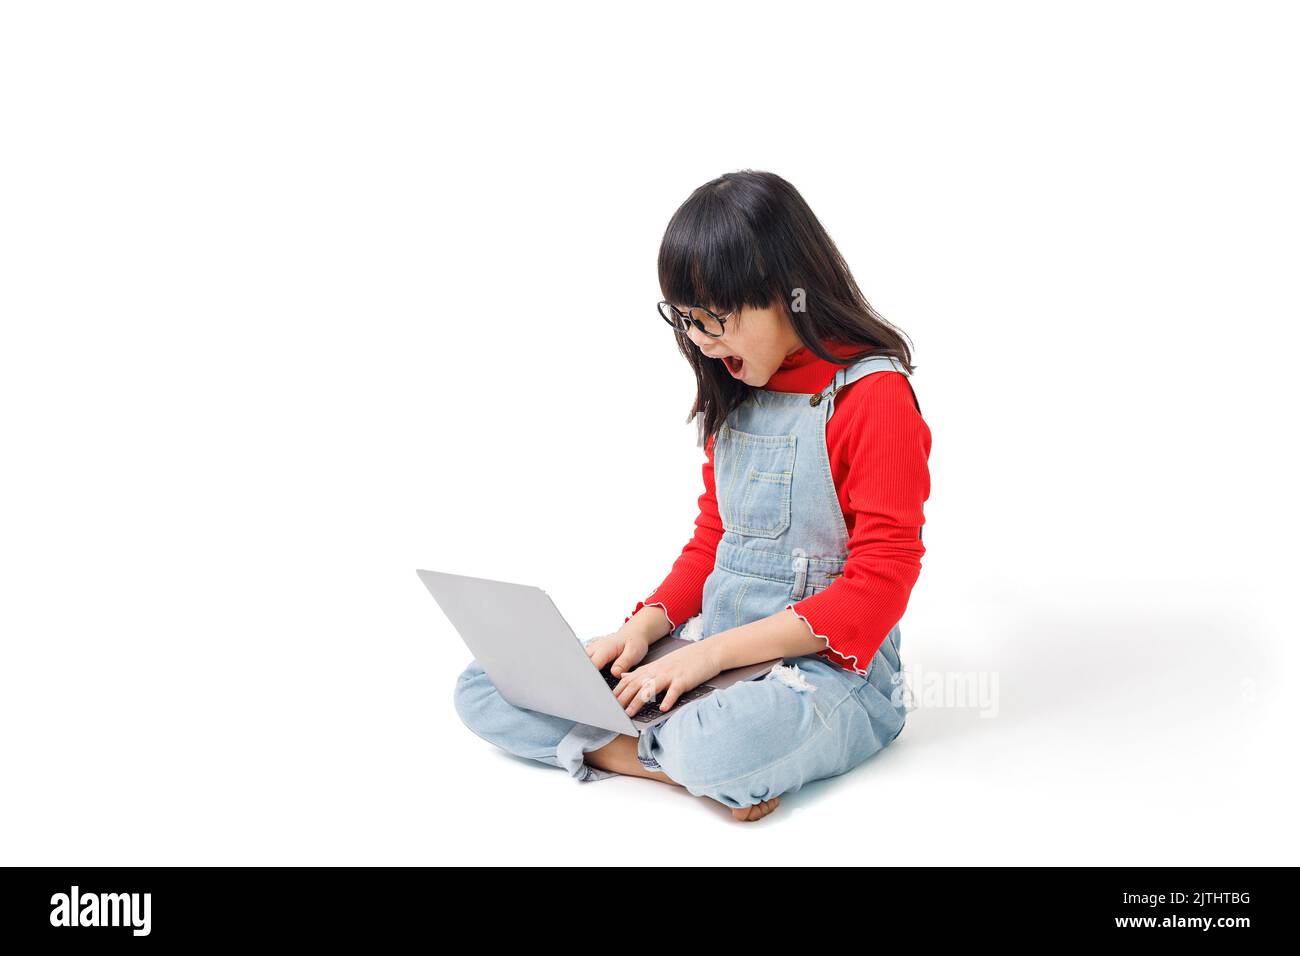 Ein junges Mädchen saß auf dem Boden, arbeitete an einem Computer, mit einem überraschenden Gesichtsausdruck. Stockfoto